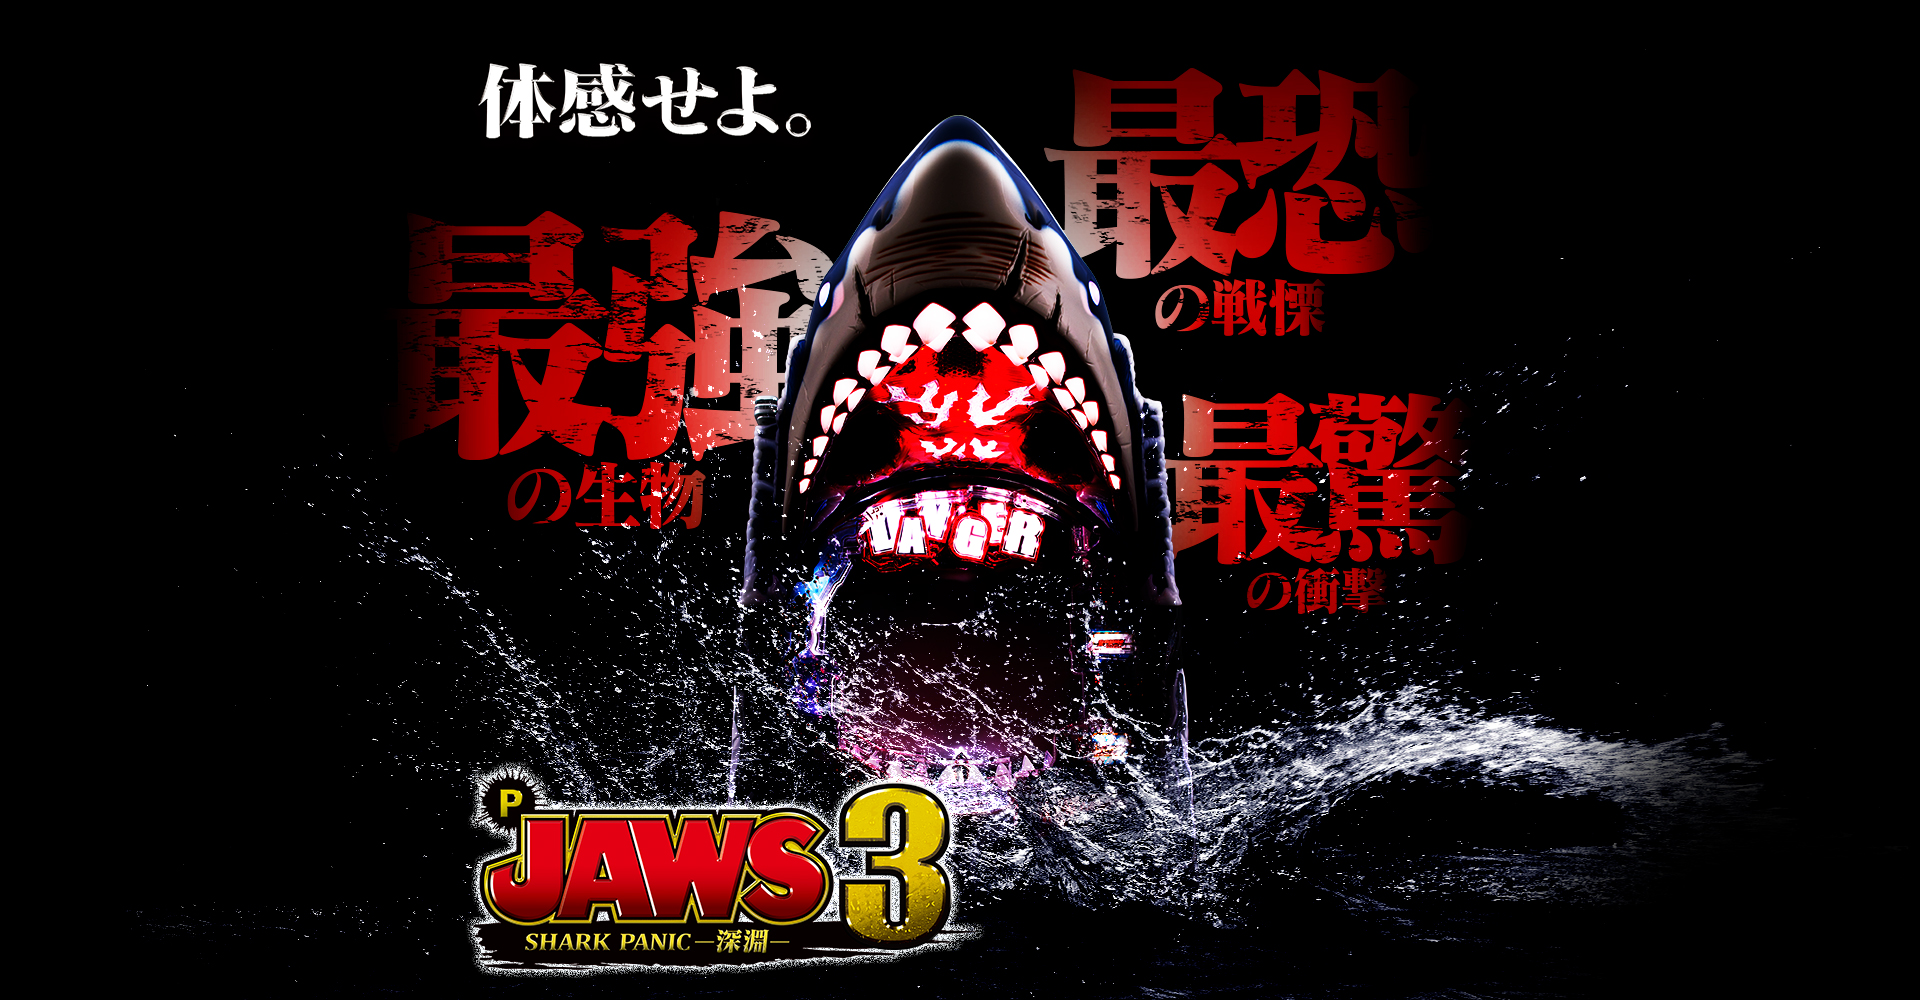 P JAWS3 SHARK PANIC-深淵-